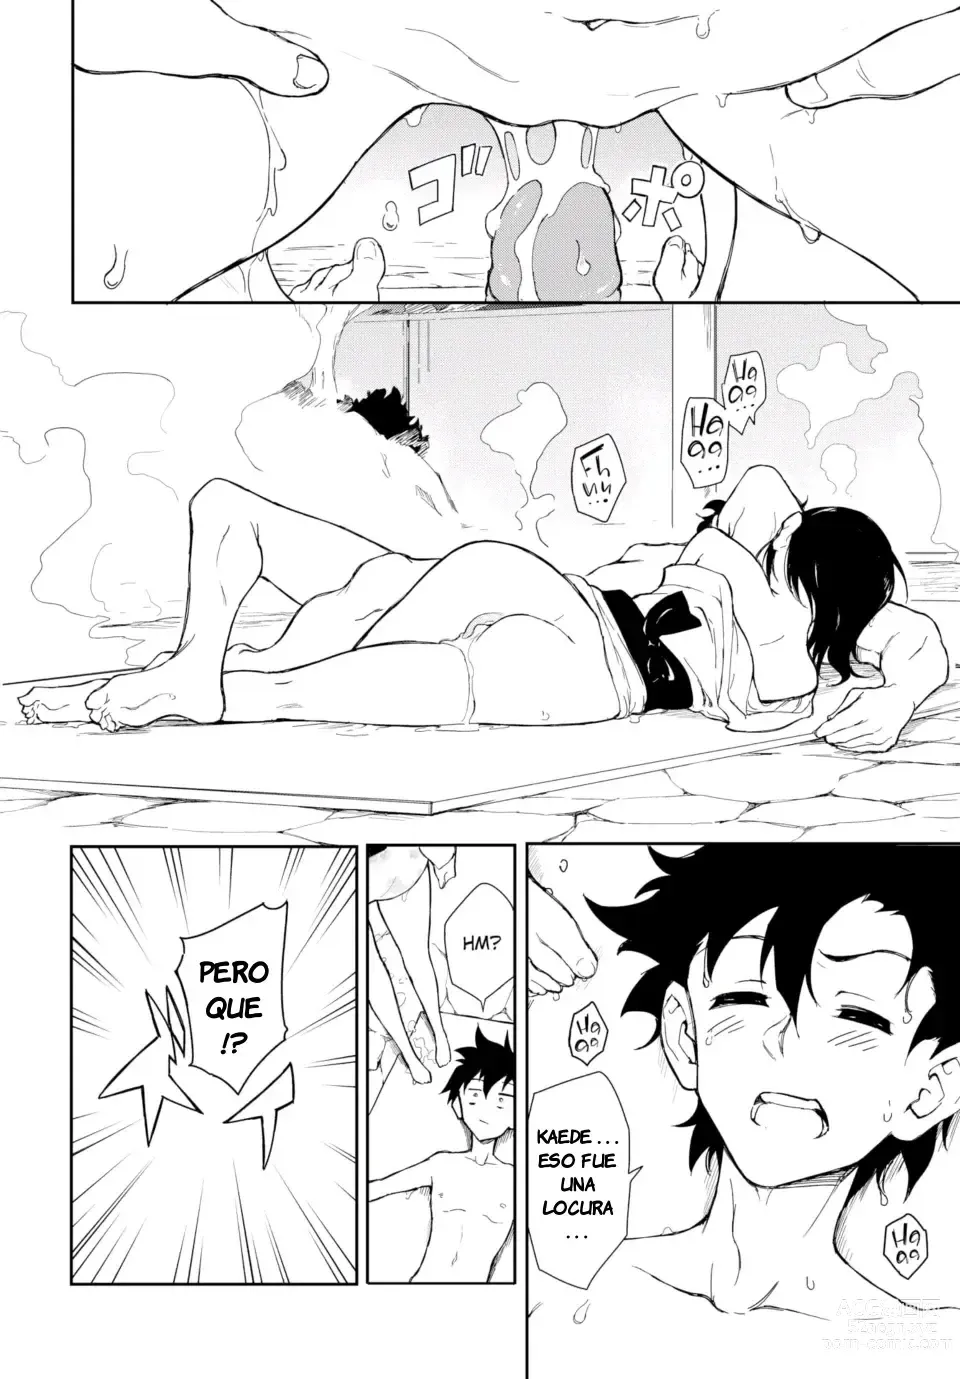 Page 194 of doujinshi Kaede & Suzu 1-7